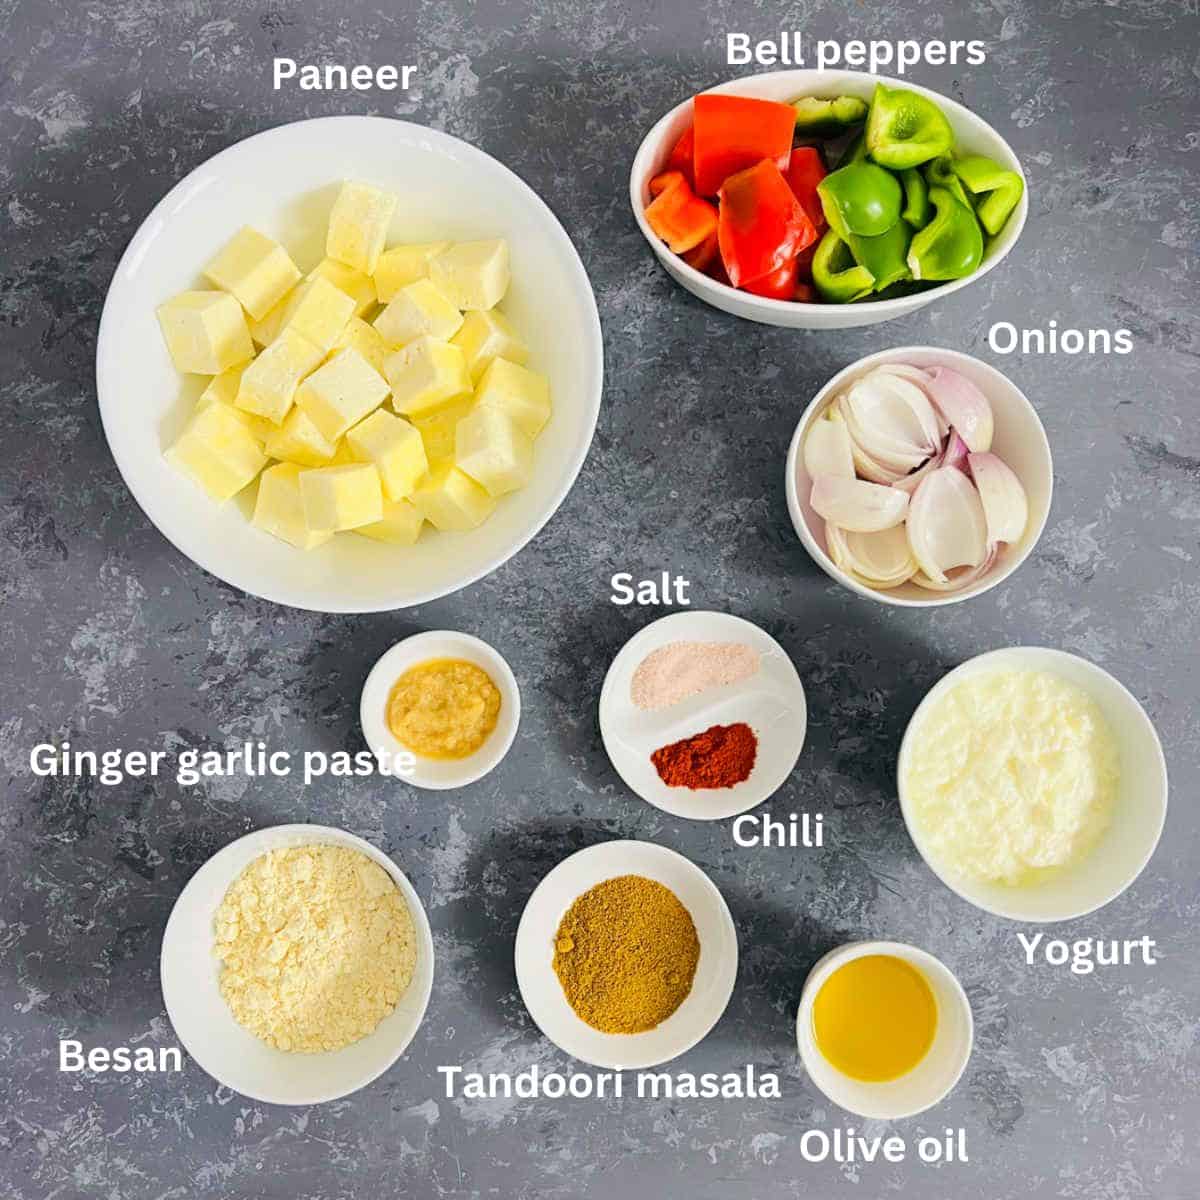 paneer tikka ingredients with labels.